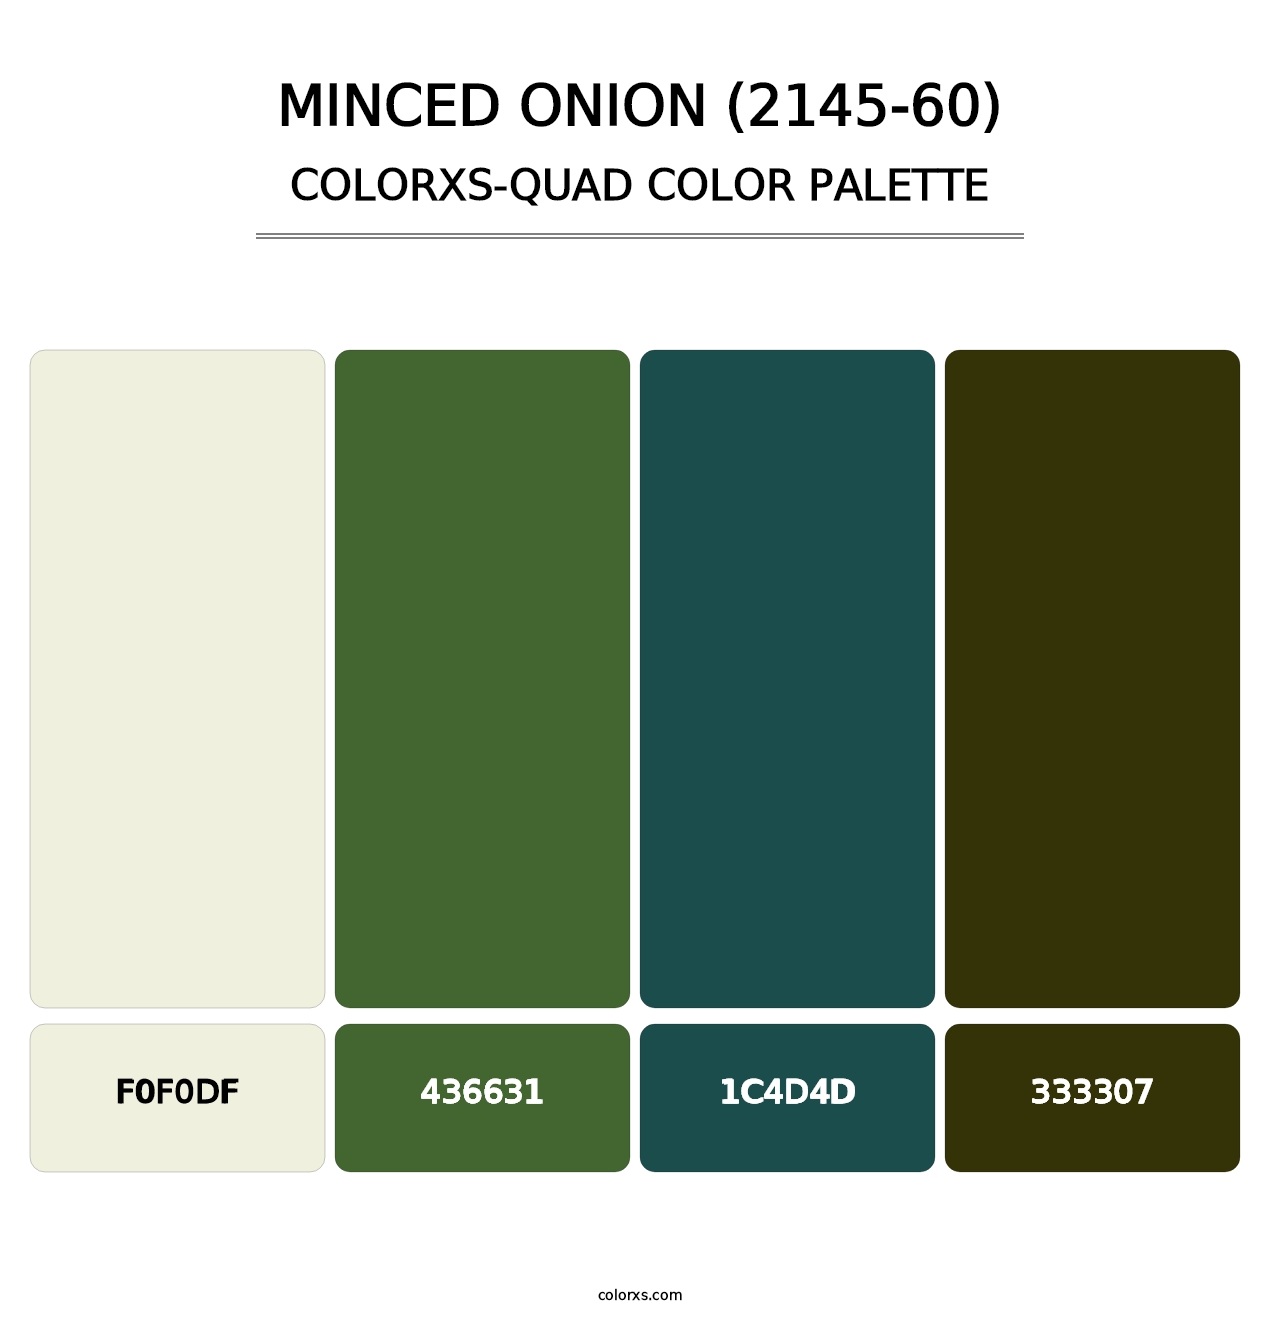 Minced Onion (2145-60) - Colorxs Quad Palette